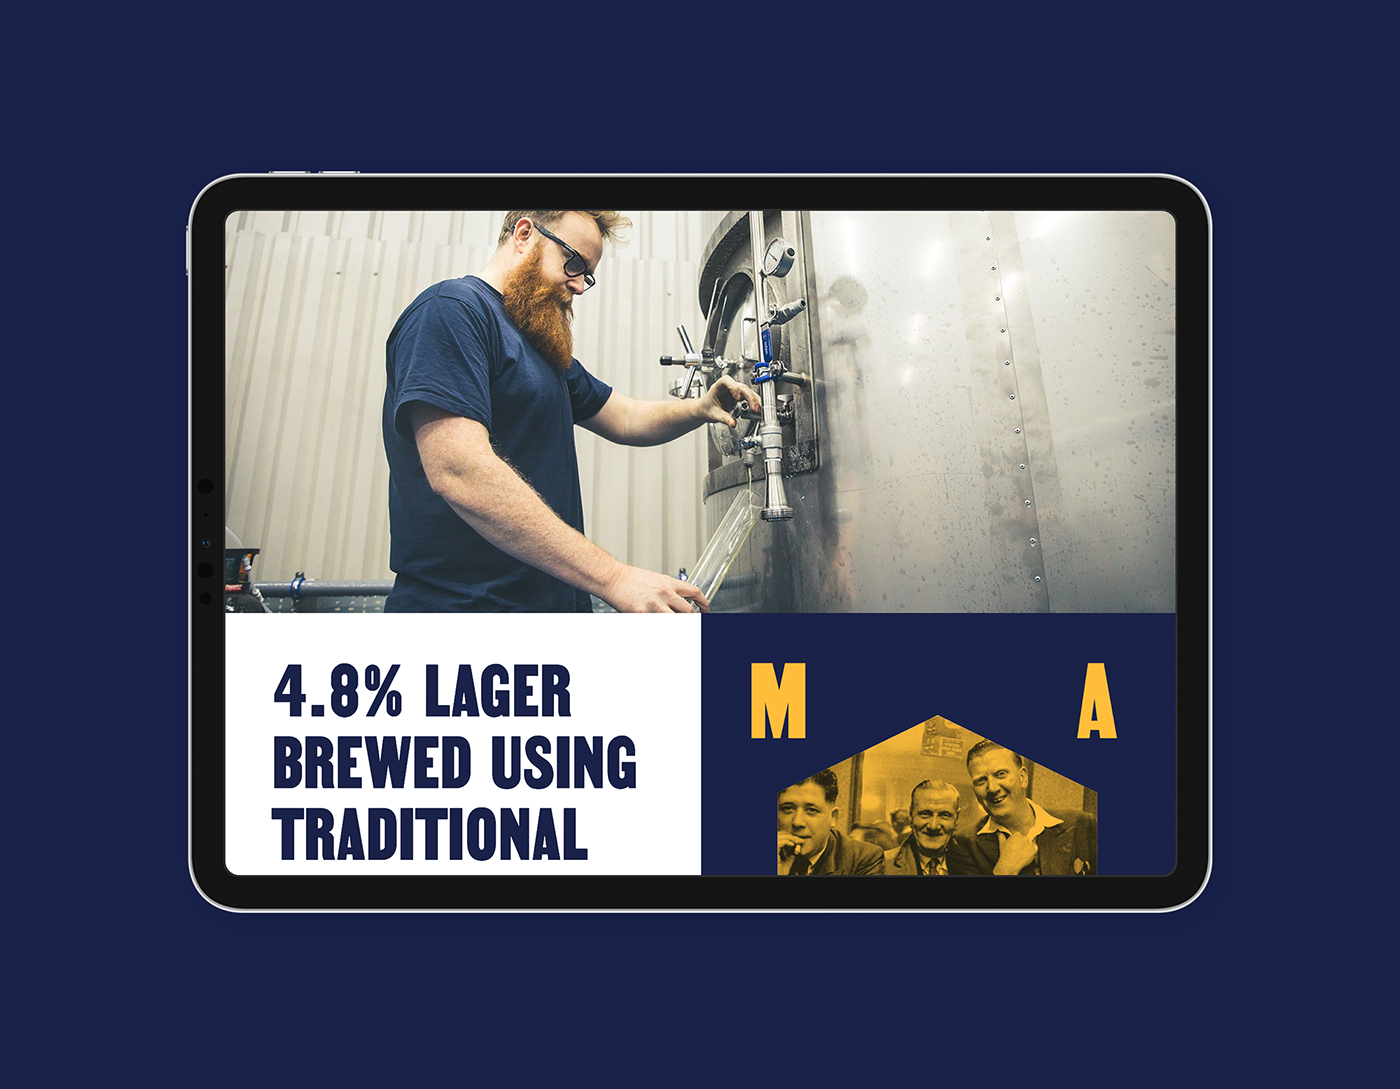 manchester Lager design beer website Website Design craft beer alcohol branding Beer Branding Beer Web Design brewery